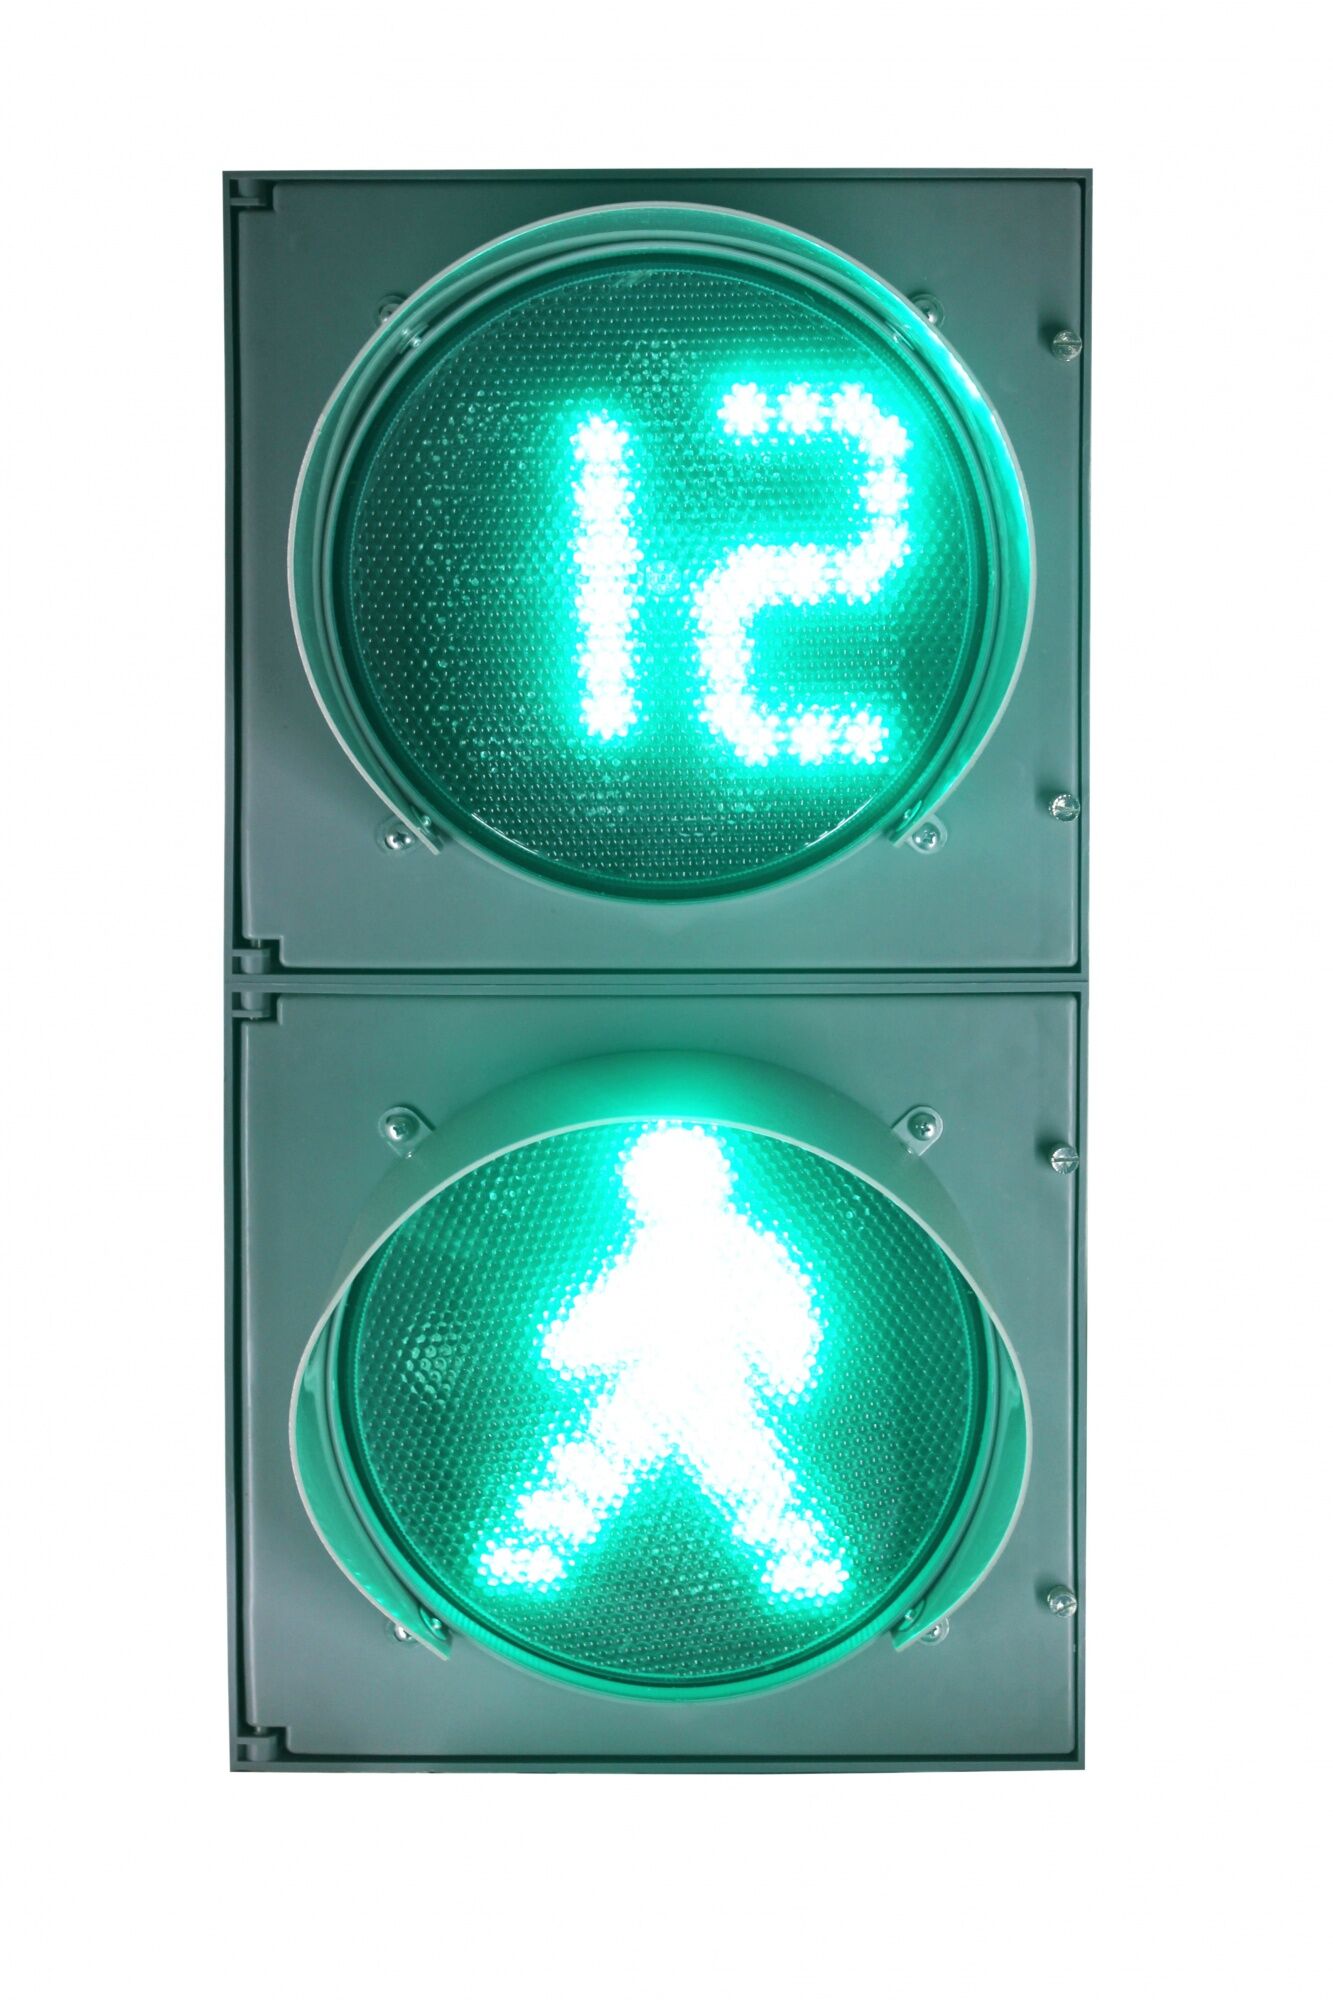 Светофор светодиодный П.1.1 с табло обратного отсчета времени зеленого сигнала и программируемым УЗСП, с комплектом креп